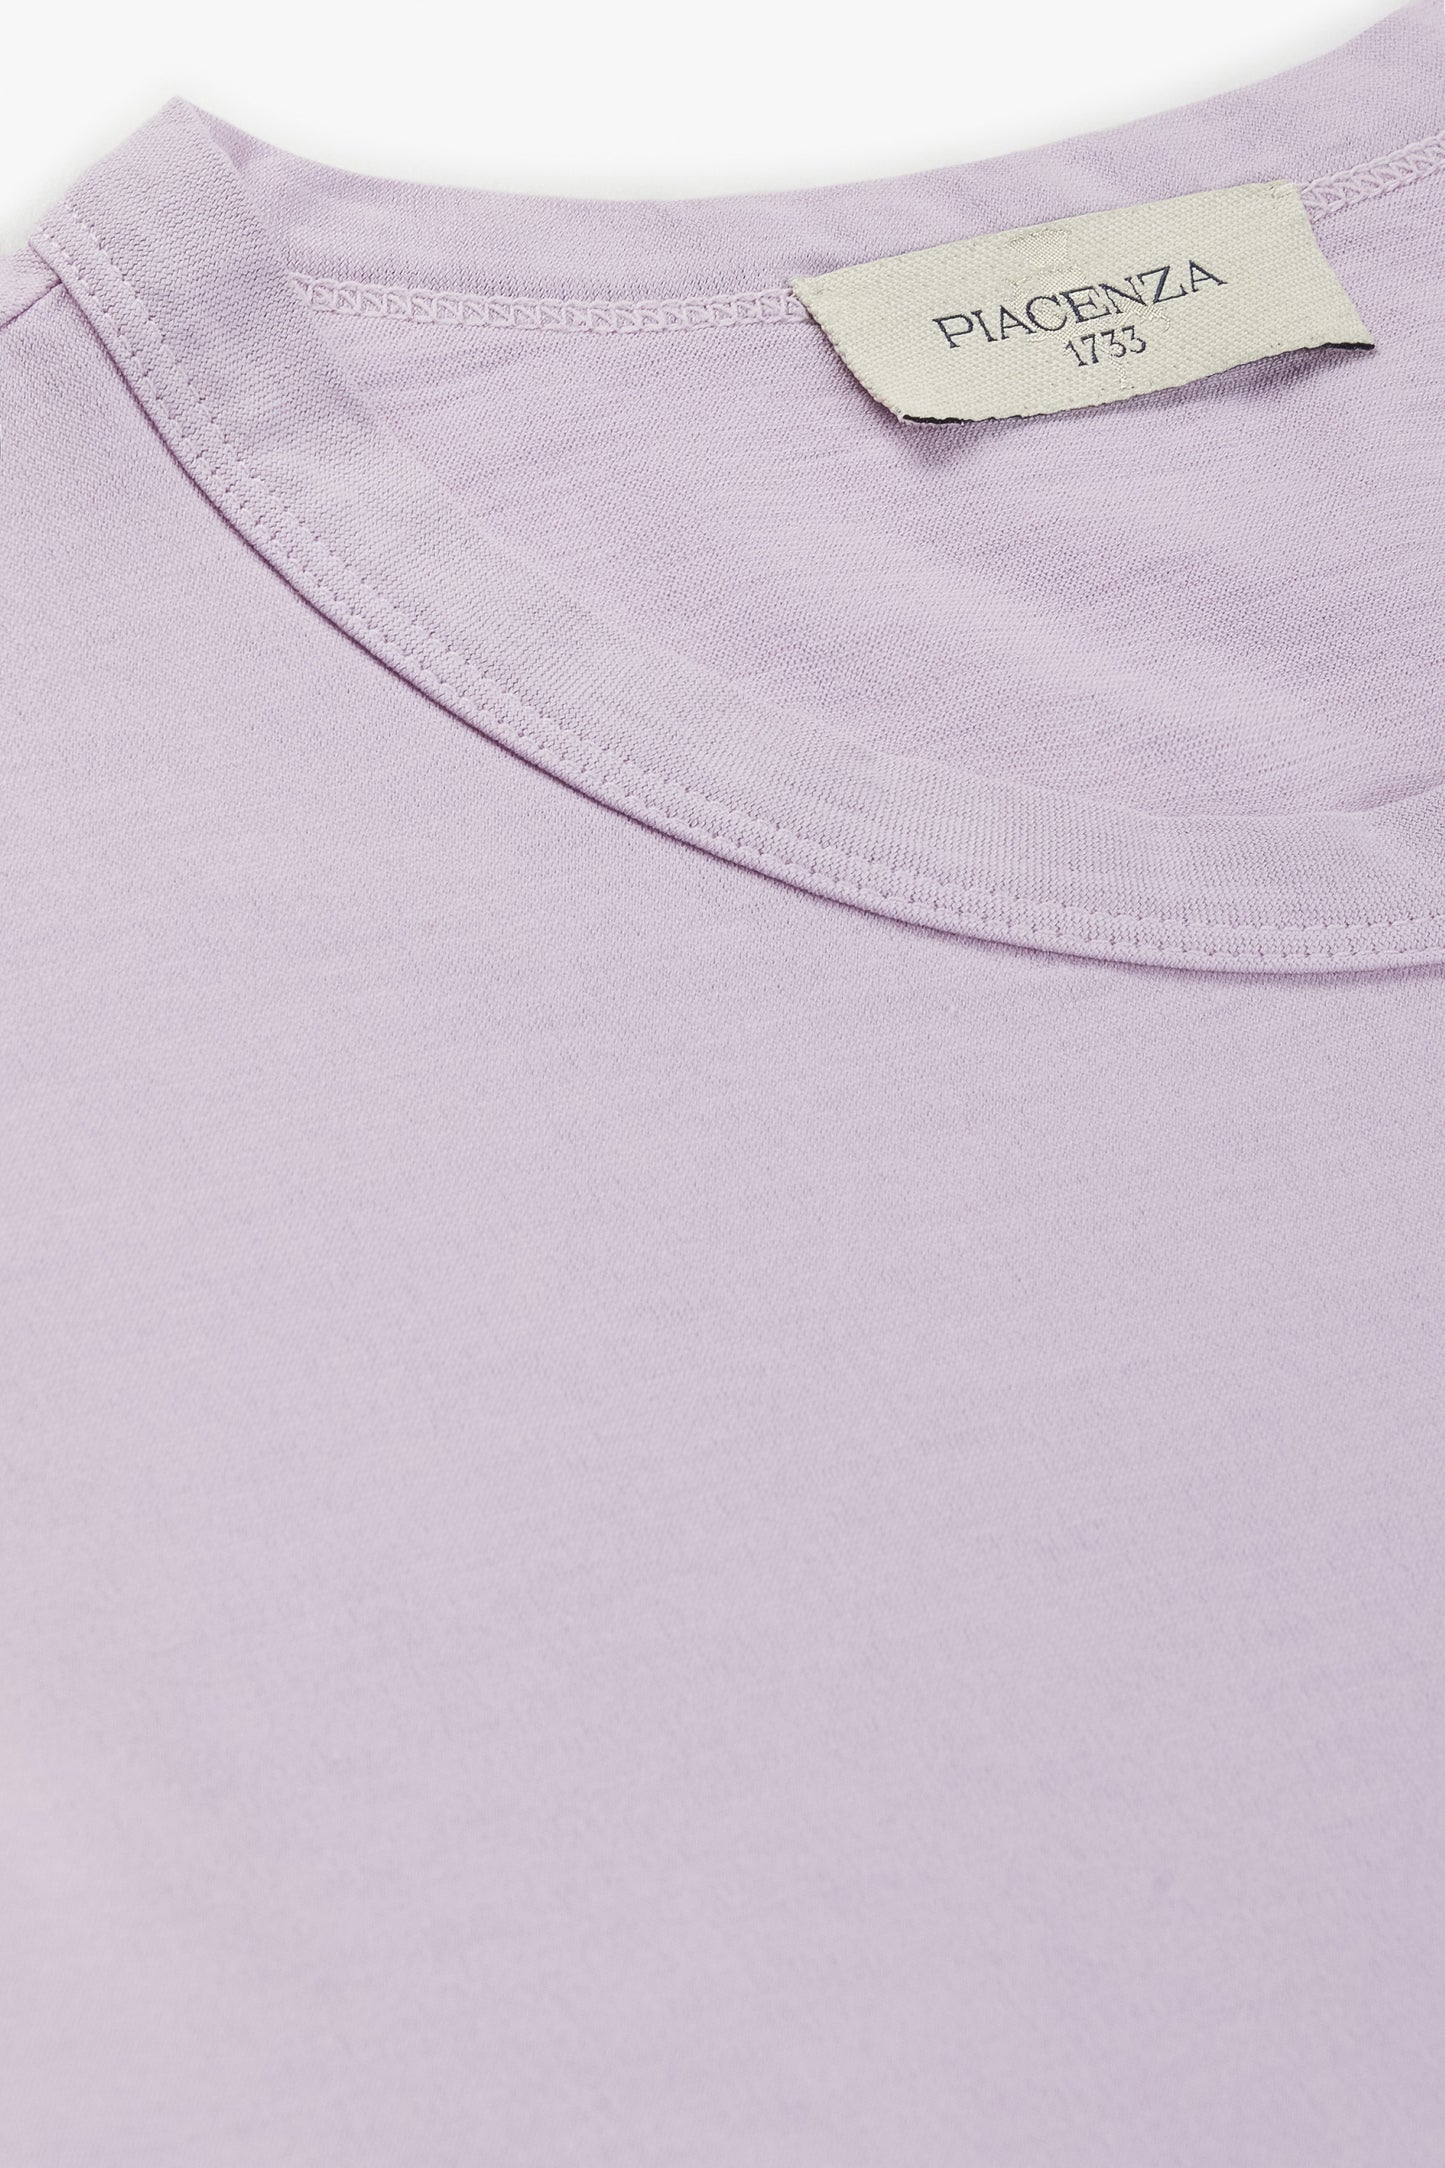 Lilac t-shirt